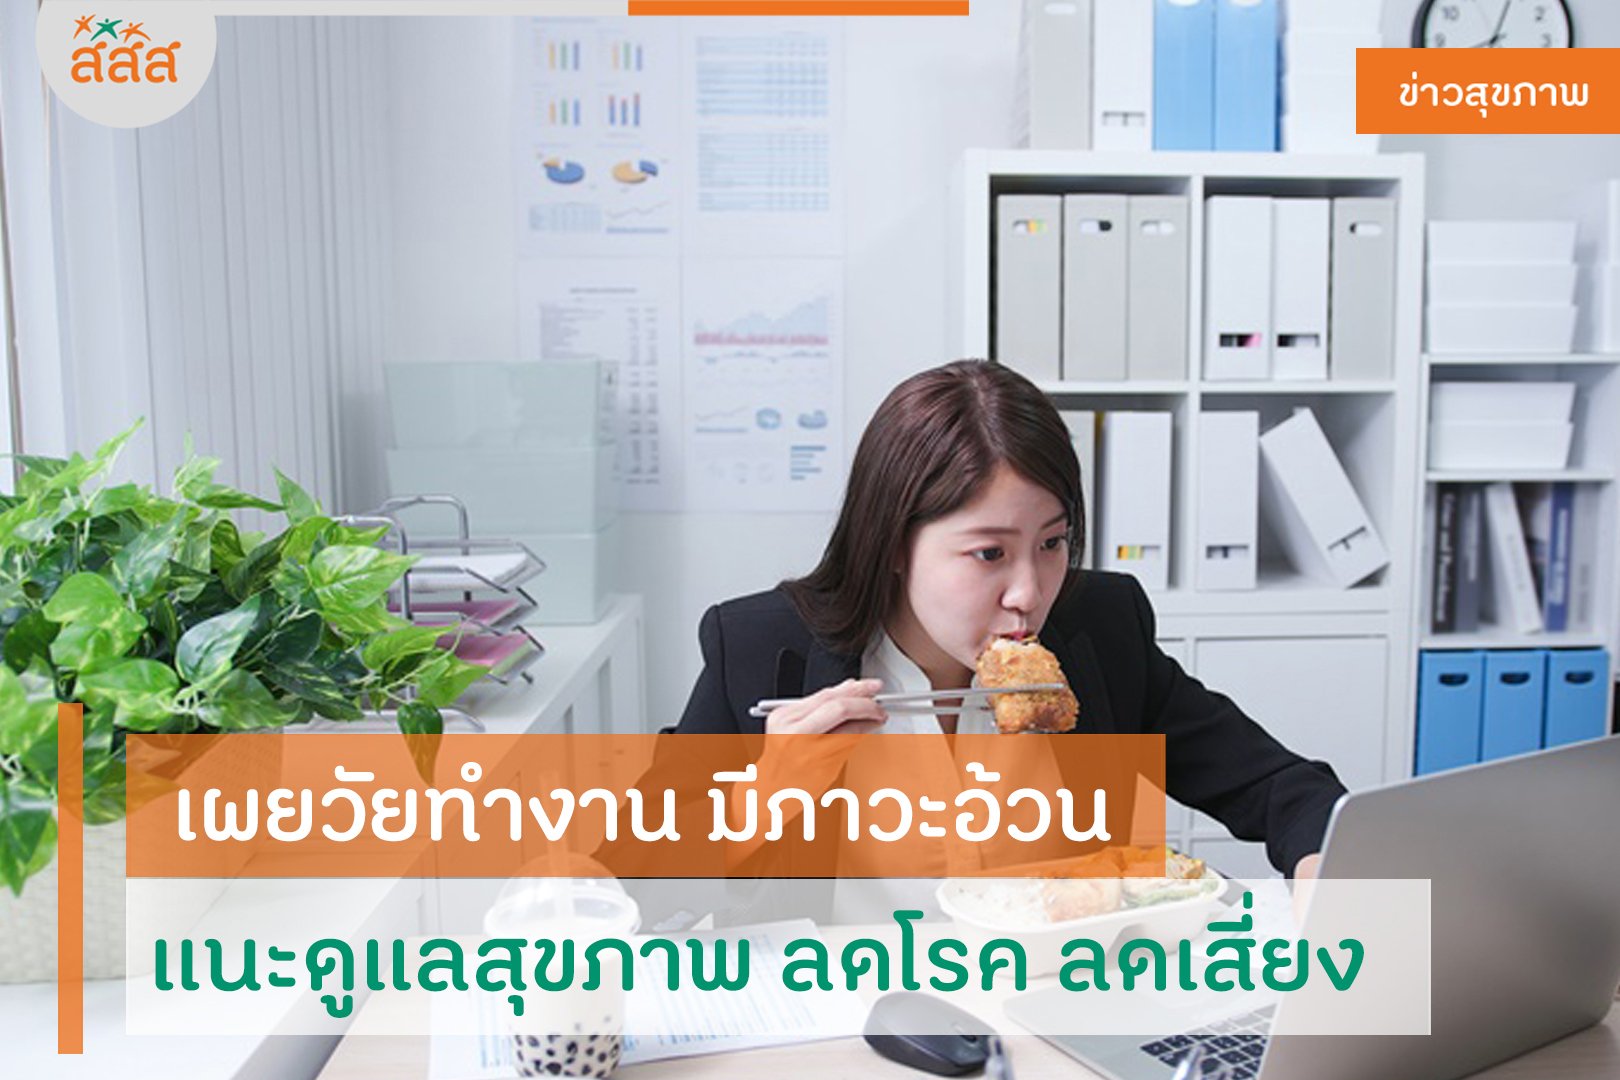 เผยวัยทำงาน มีภาวะอ้วน แนะดูแลสุขภาพ ลดโรค ลดเสี่ยง thaihealth